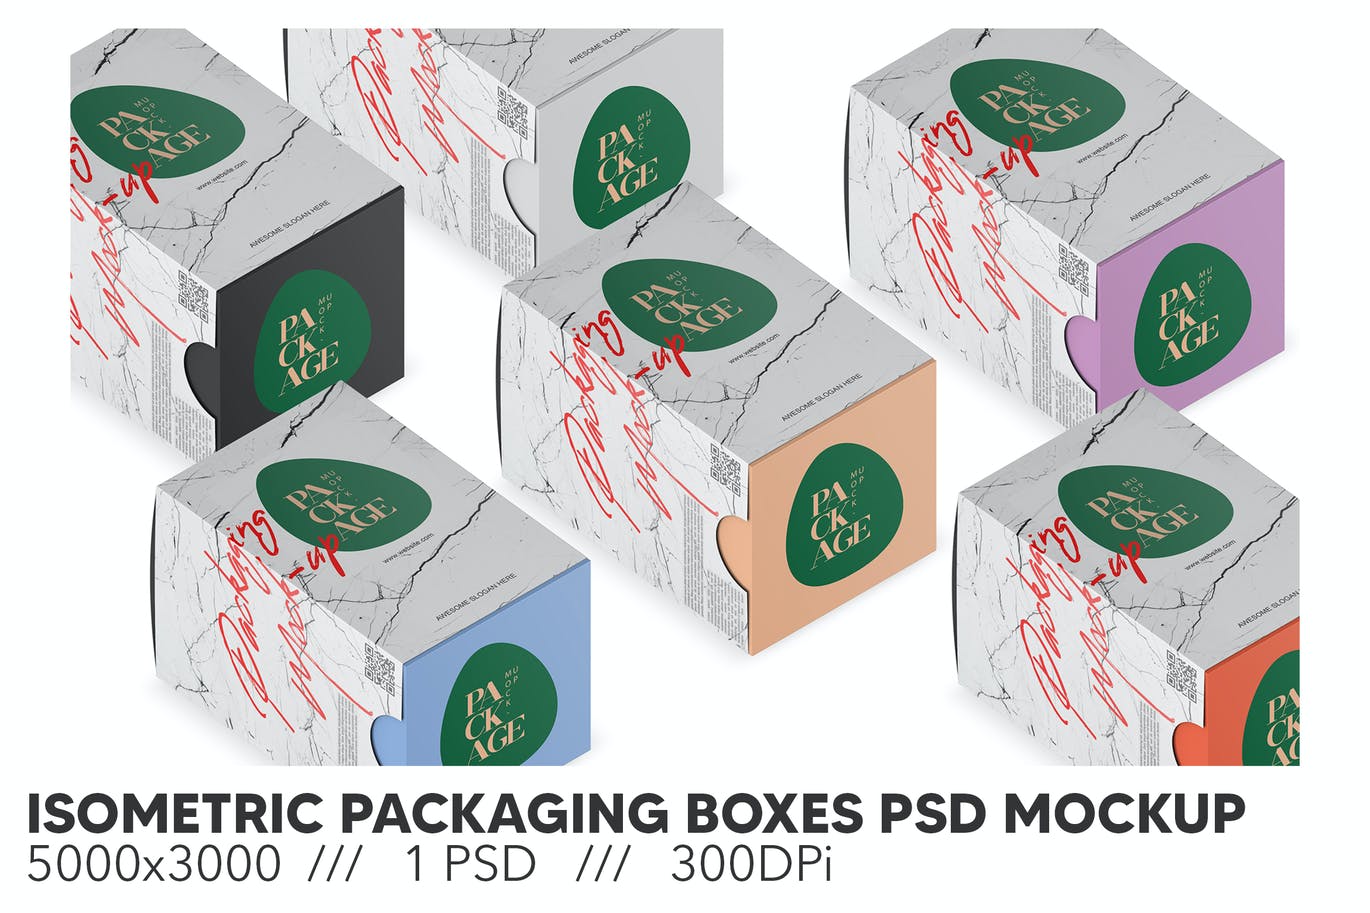 等距包装箱包装样机 (PSD)